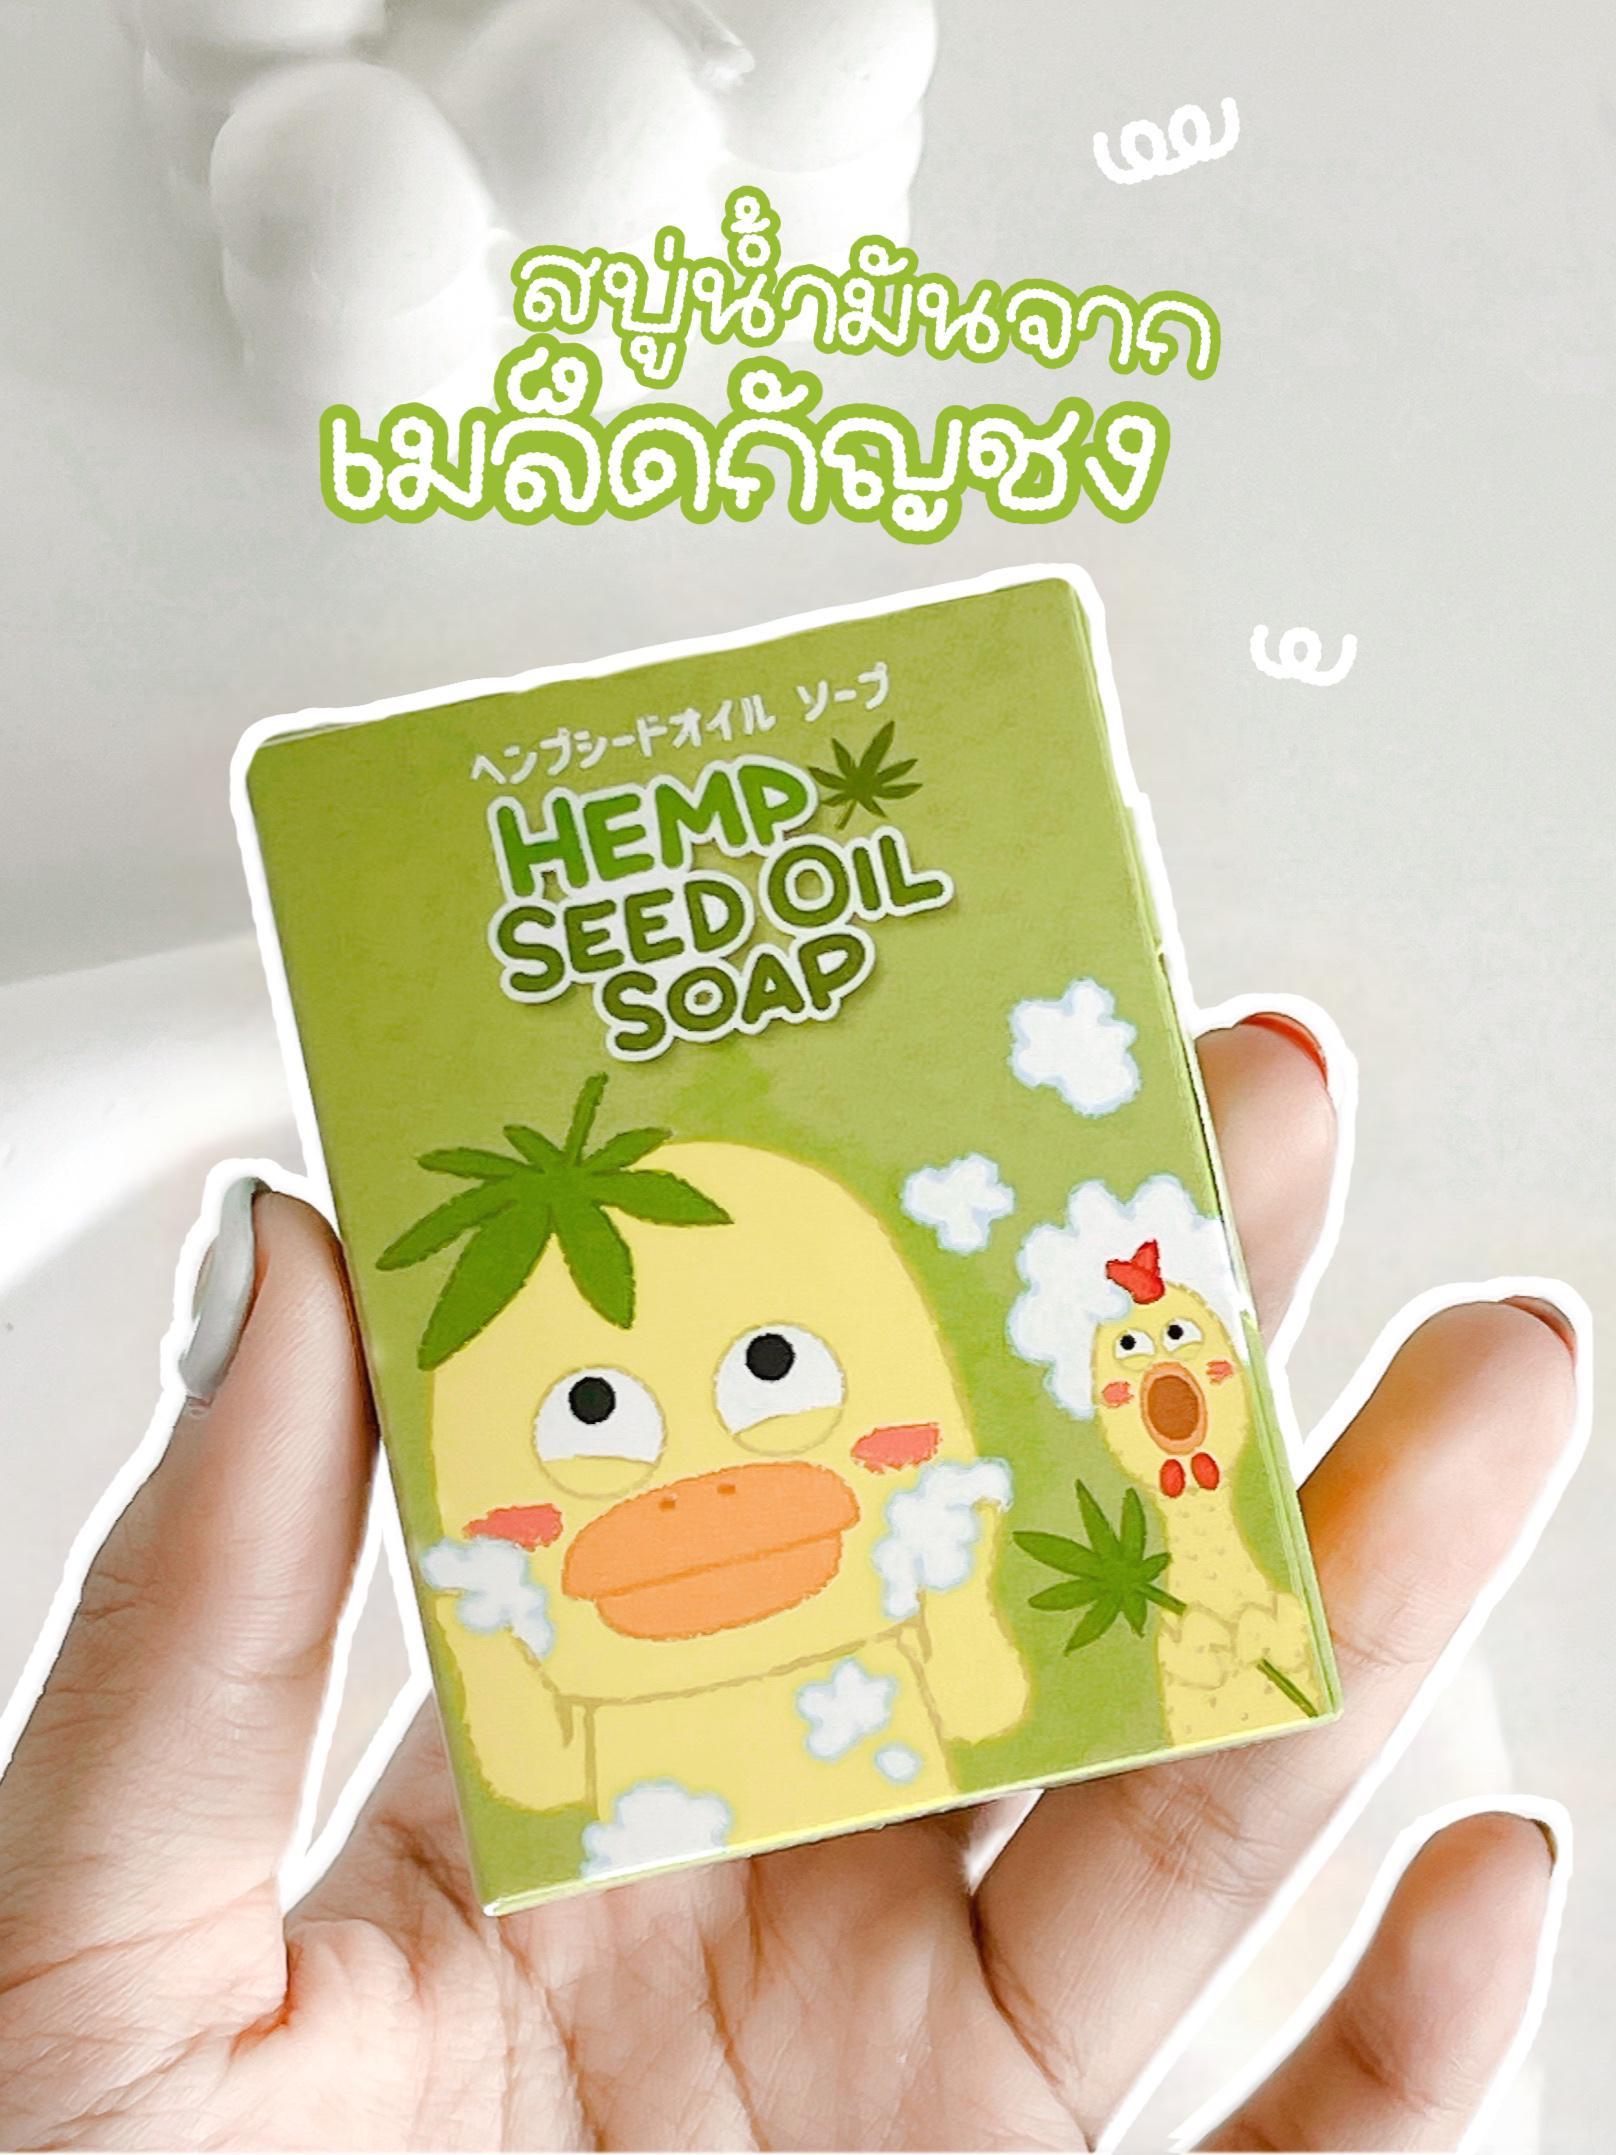 ภาพหน้าปก Hemp Seed Oil Soap | หน้าใส ผิวไม่เอี๊ยด ดีต่อใจจนร้องว้าวววว✨ ที่:0